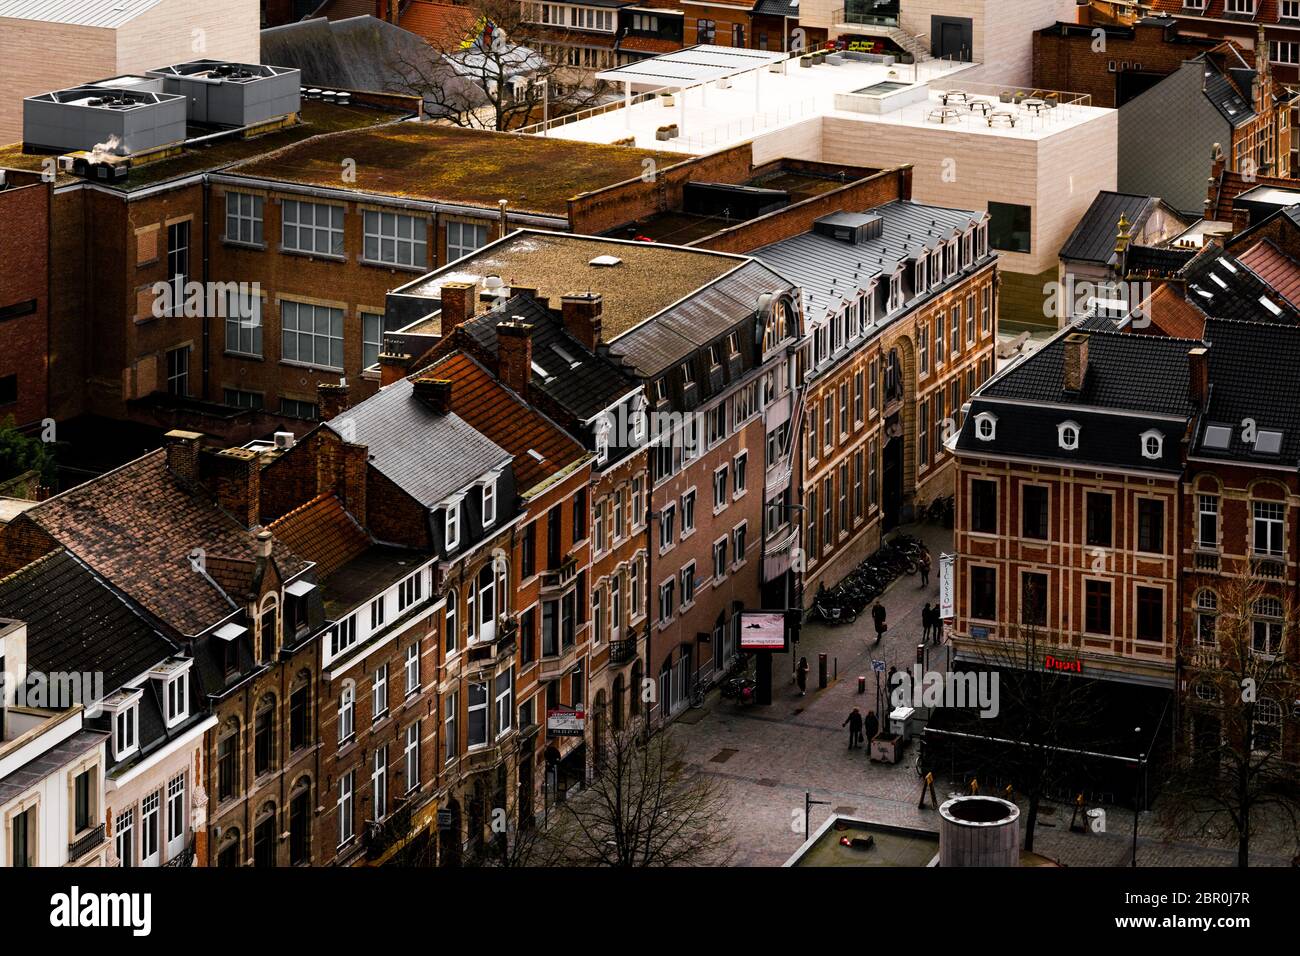 Die Stadt Leuven von oben. Aufgenommen aus den akademischen Bibliotheken von Leuven, Belgien Stockfoto